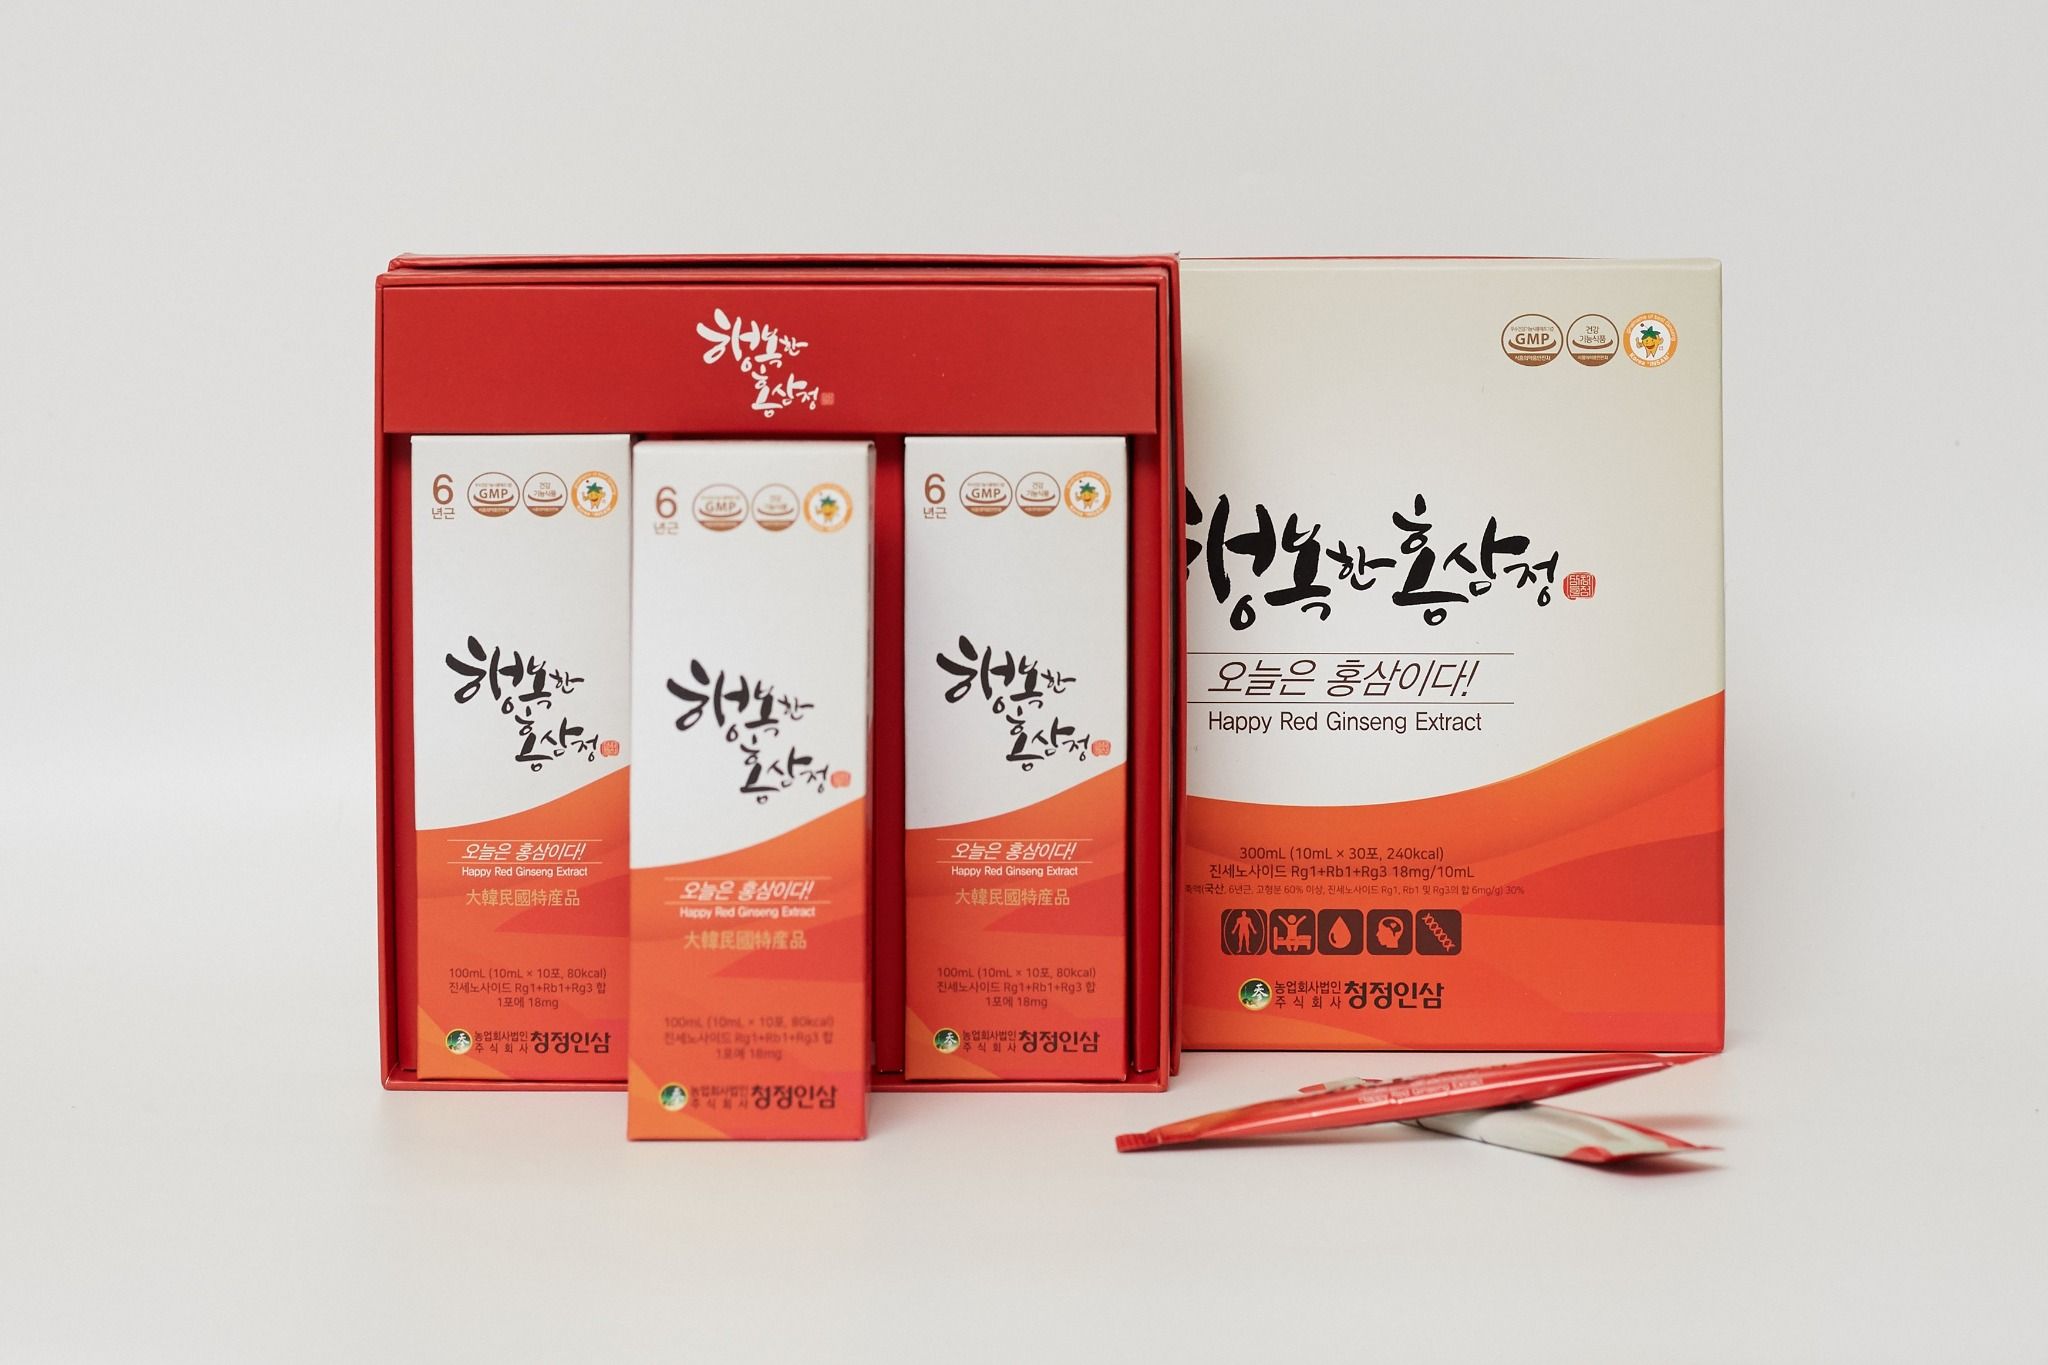  Tinh Chất Hồng Sâm Pha Sắn (Happy Red Ginseng Extract) 10ml x 30 gói 